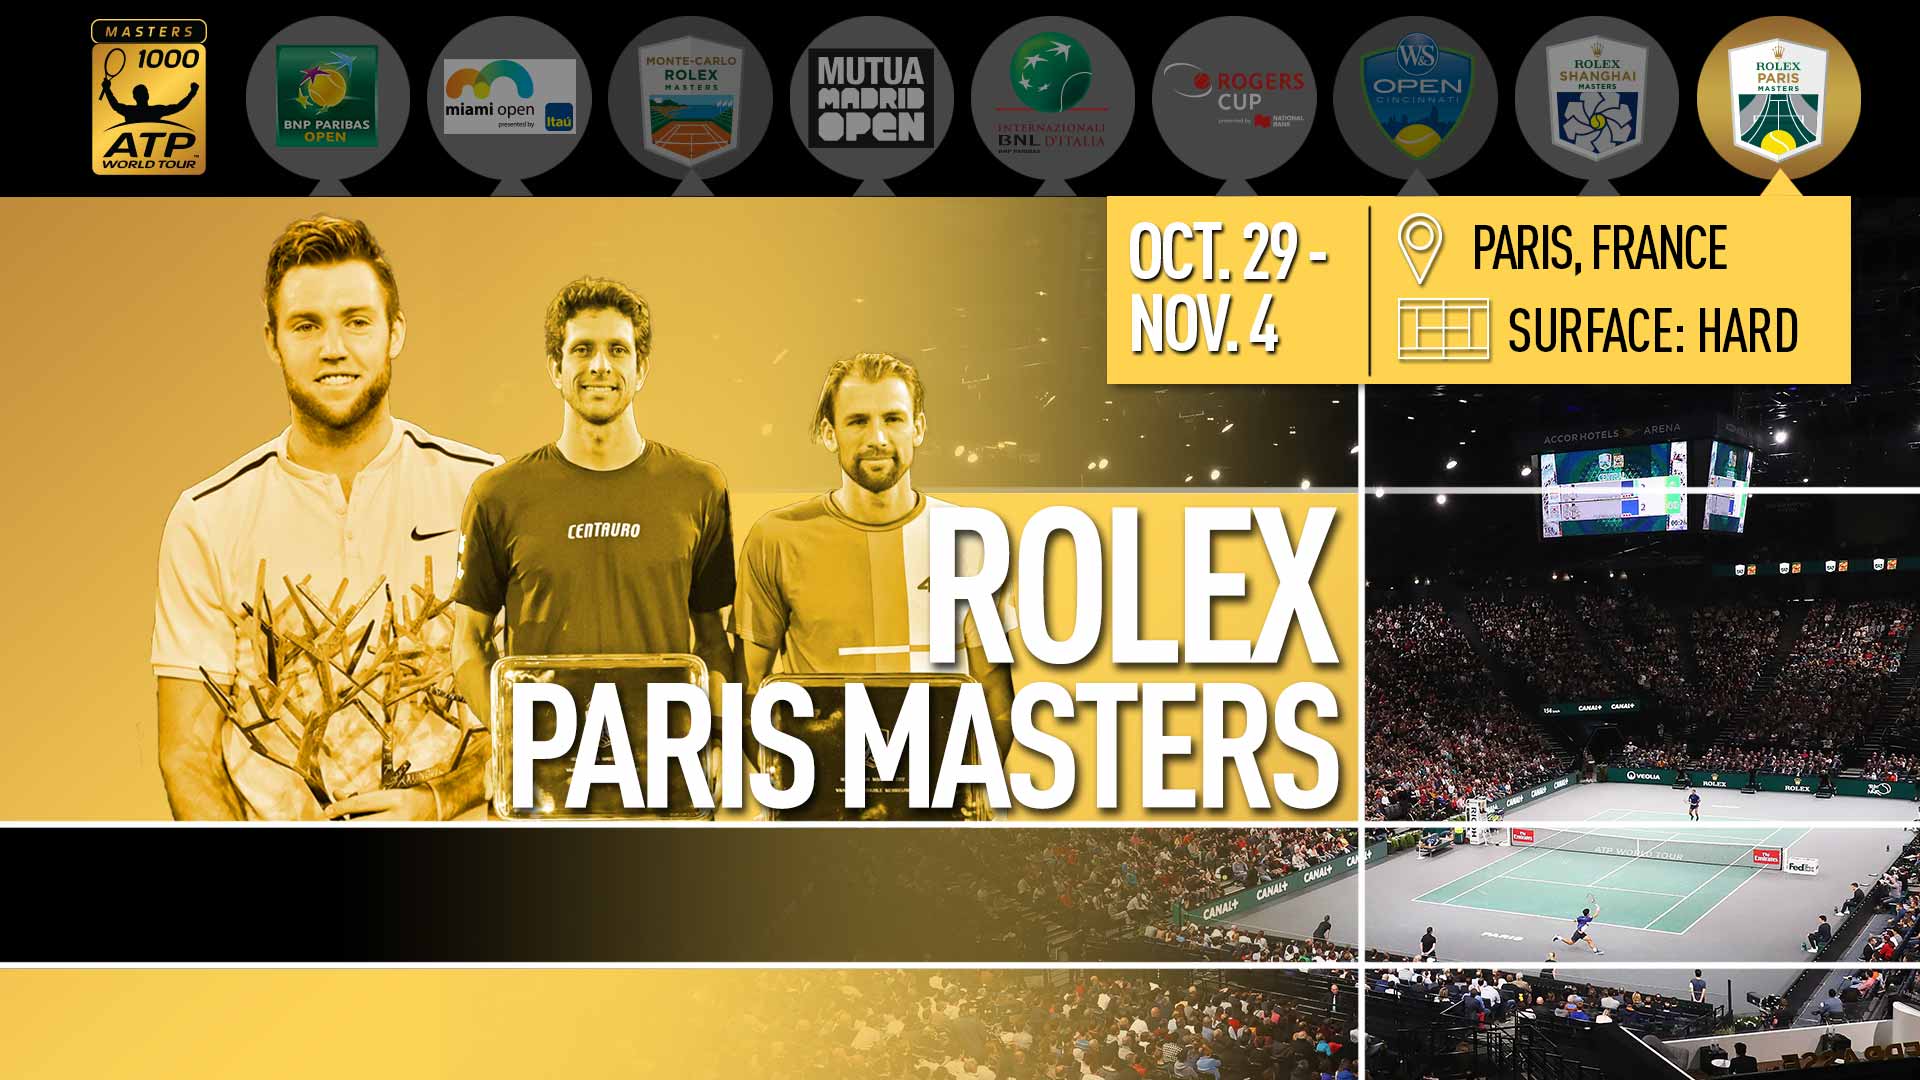 atp rolex paris masters 2018